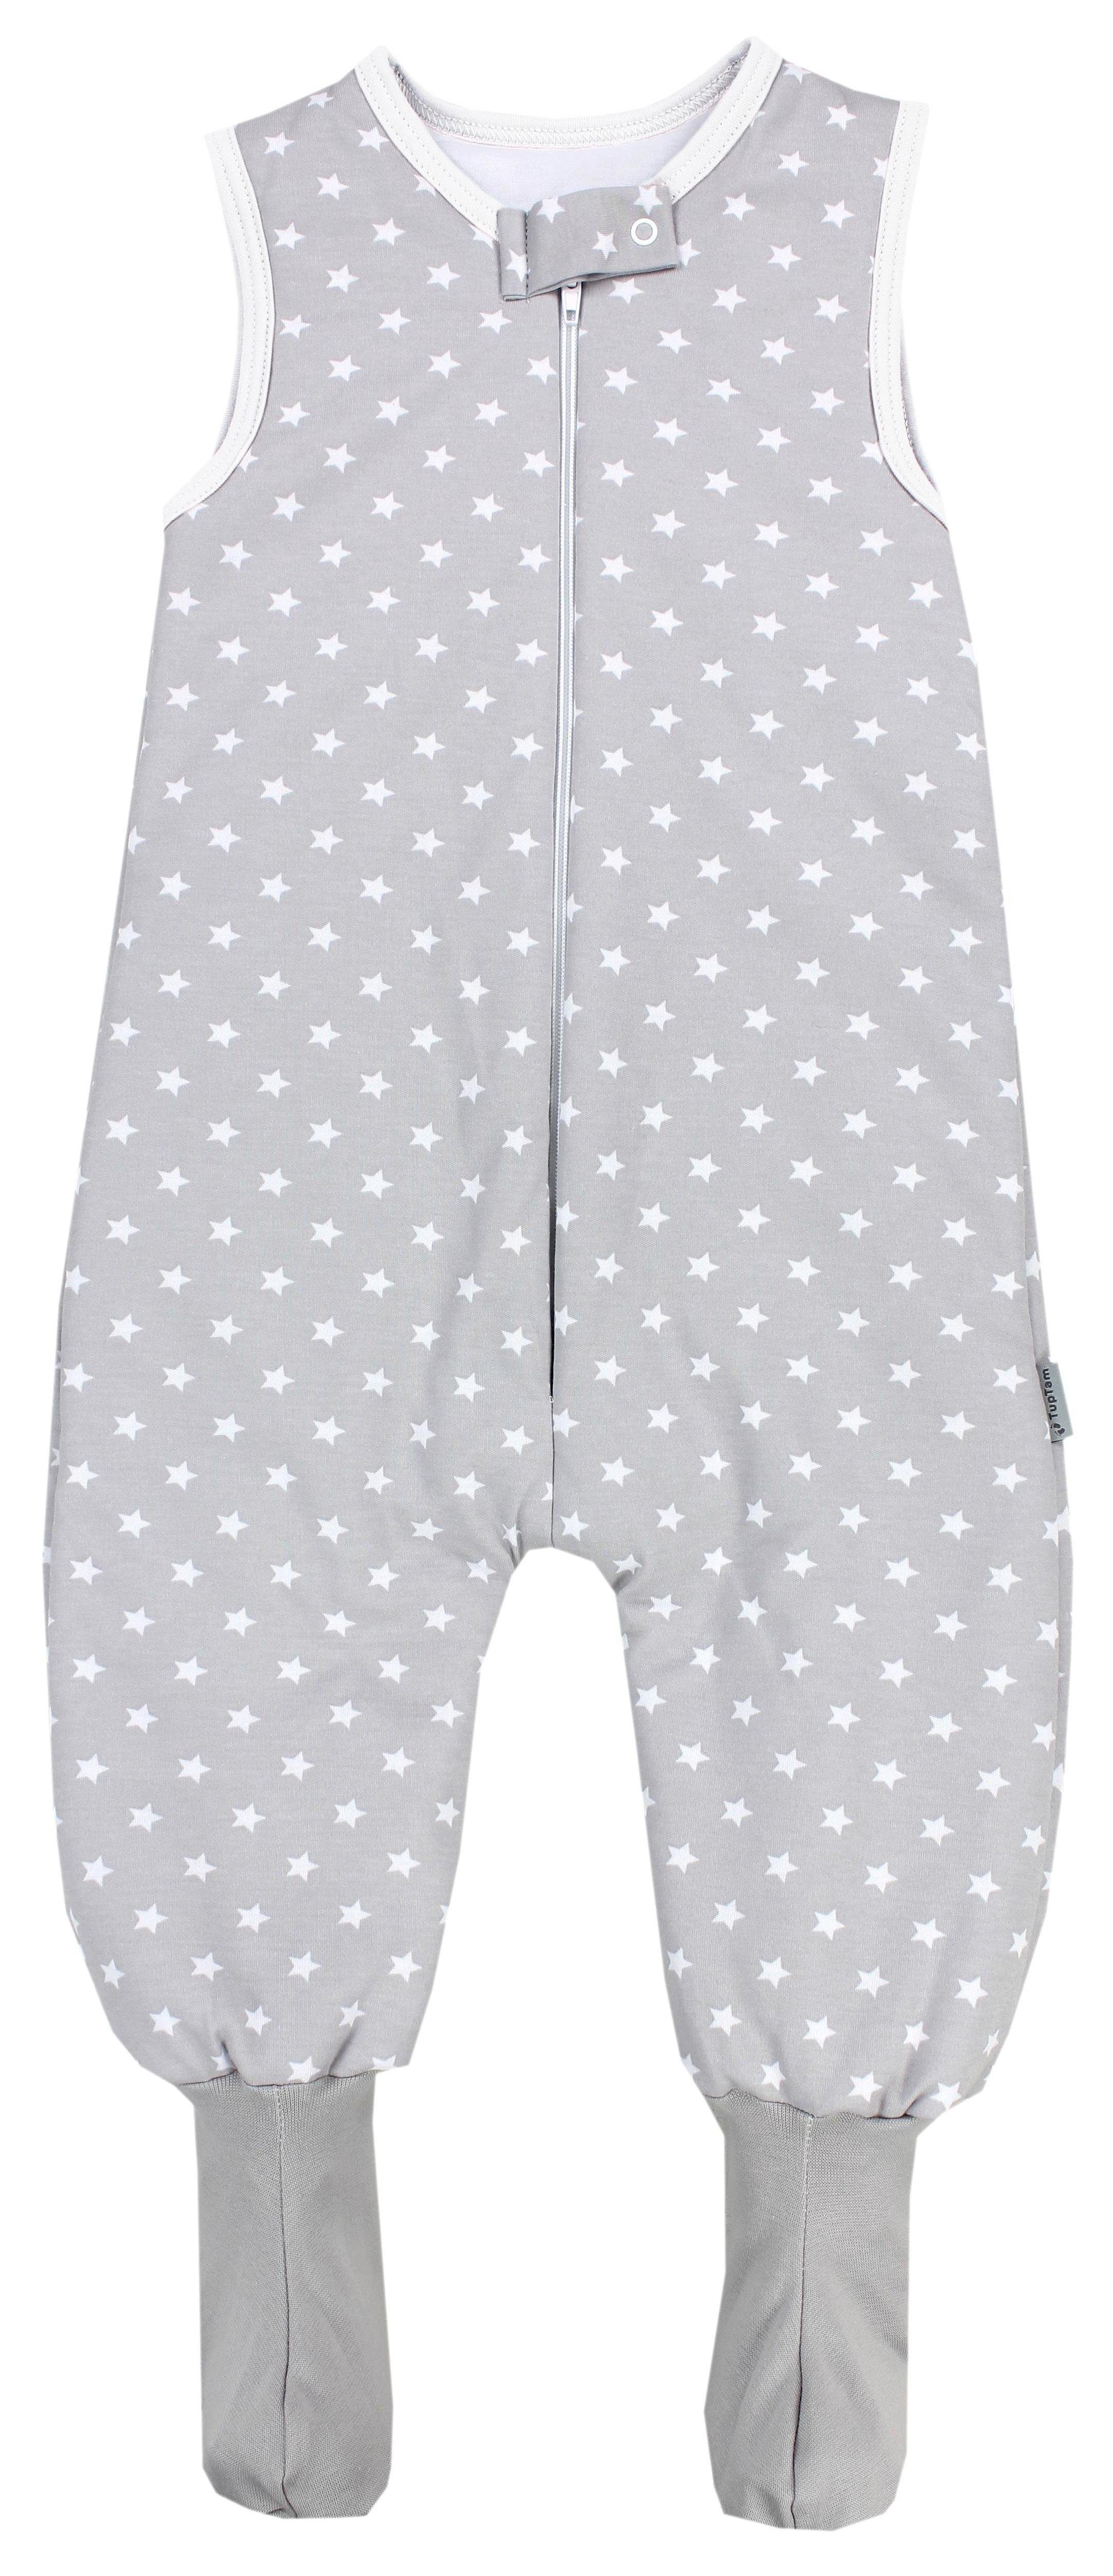 TupTam Babyschlafsack Winterschlafsack mit Beinen und Füßen OEKO-TEX zertifiziert, 2.5 TOG Grau / Sterne Weiß | Schlafsäcke